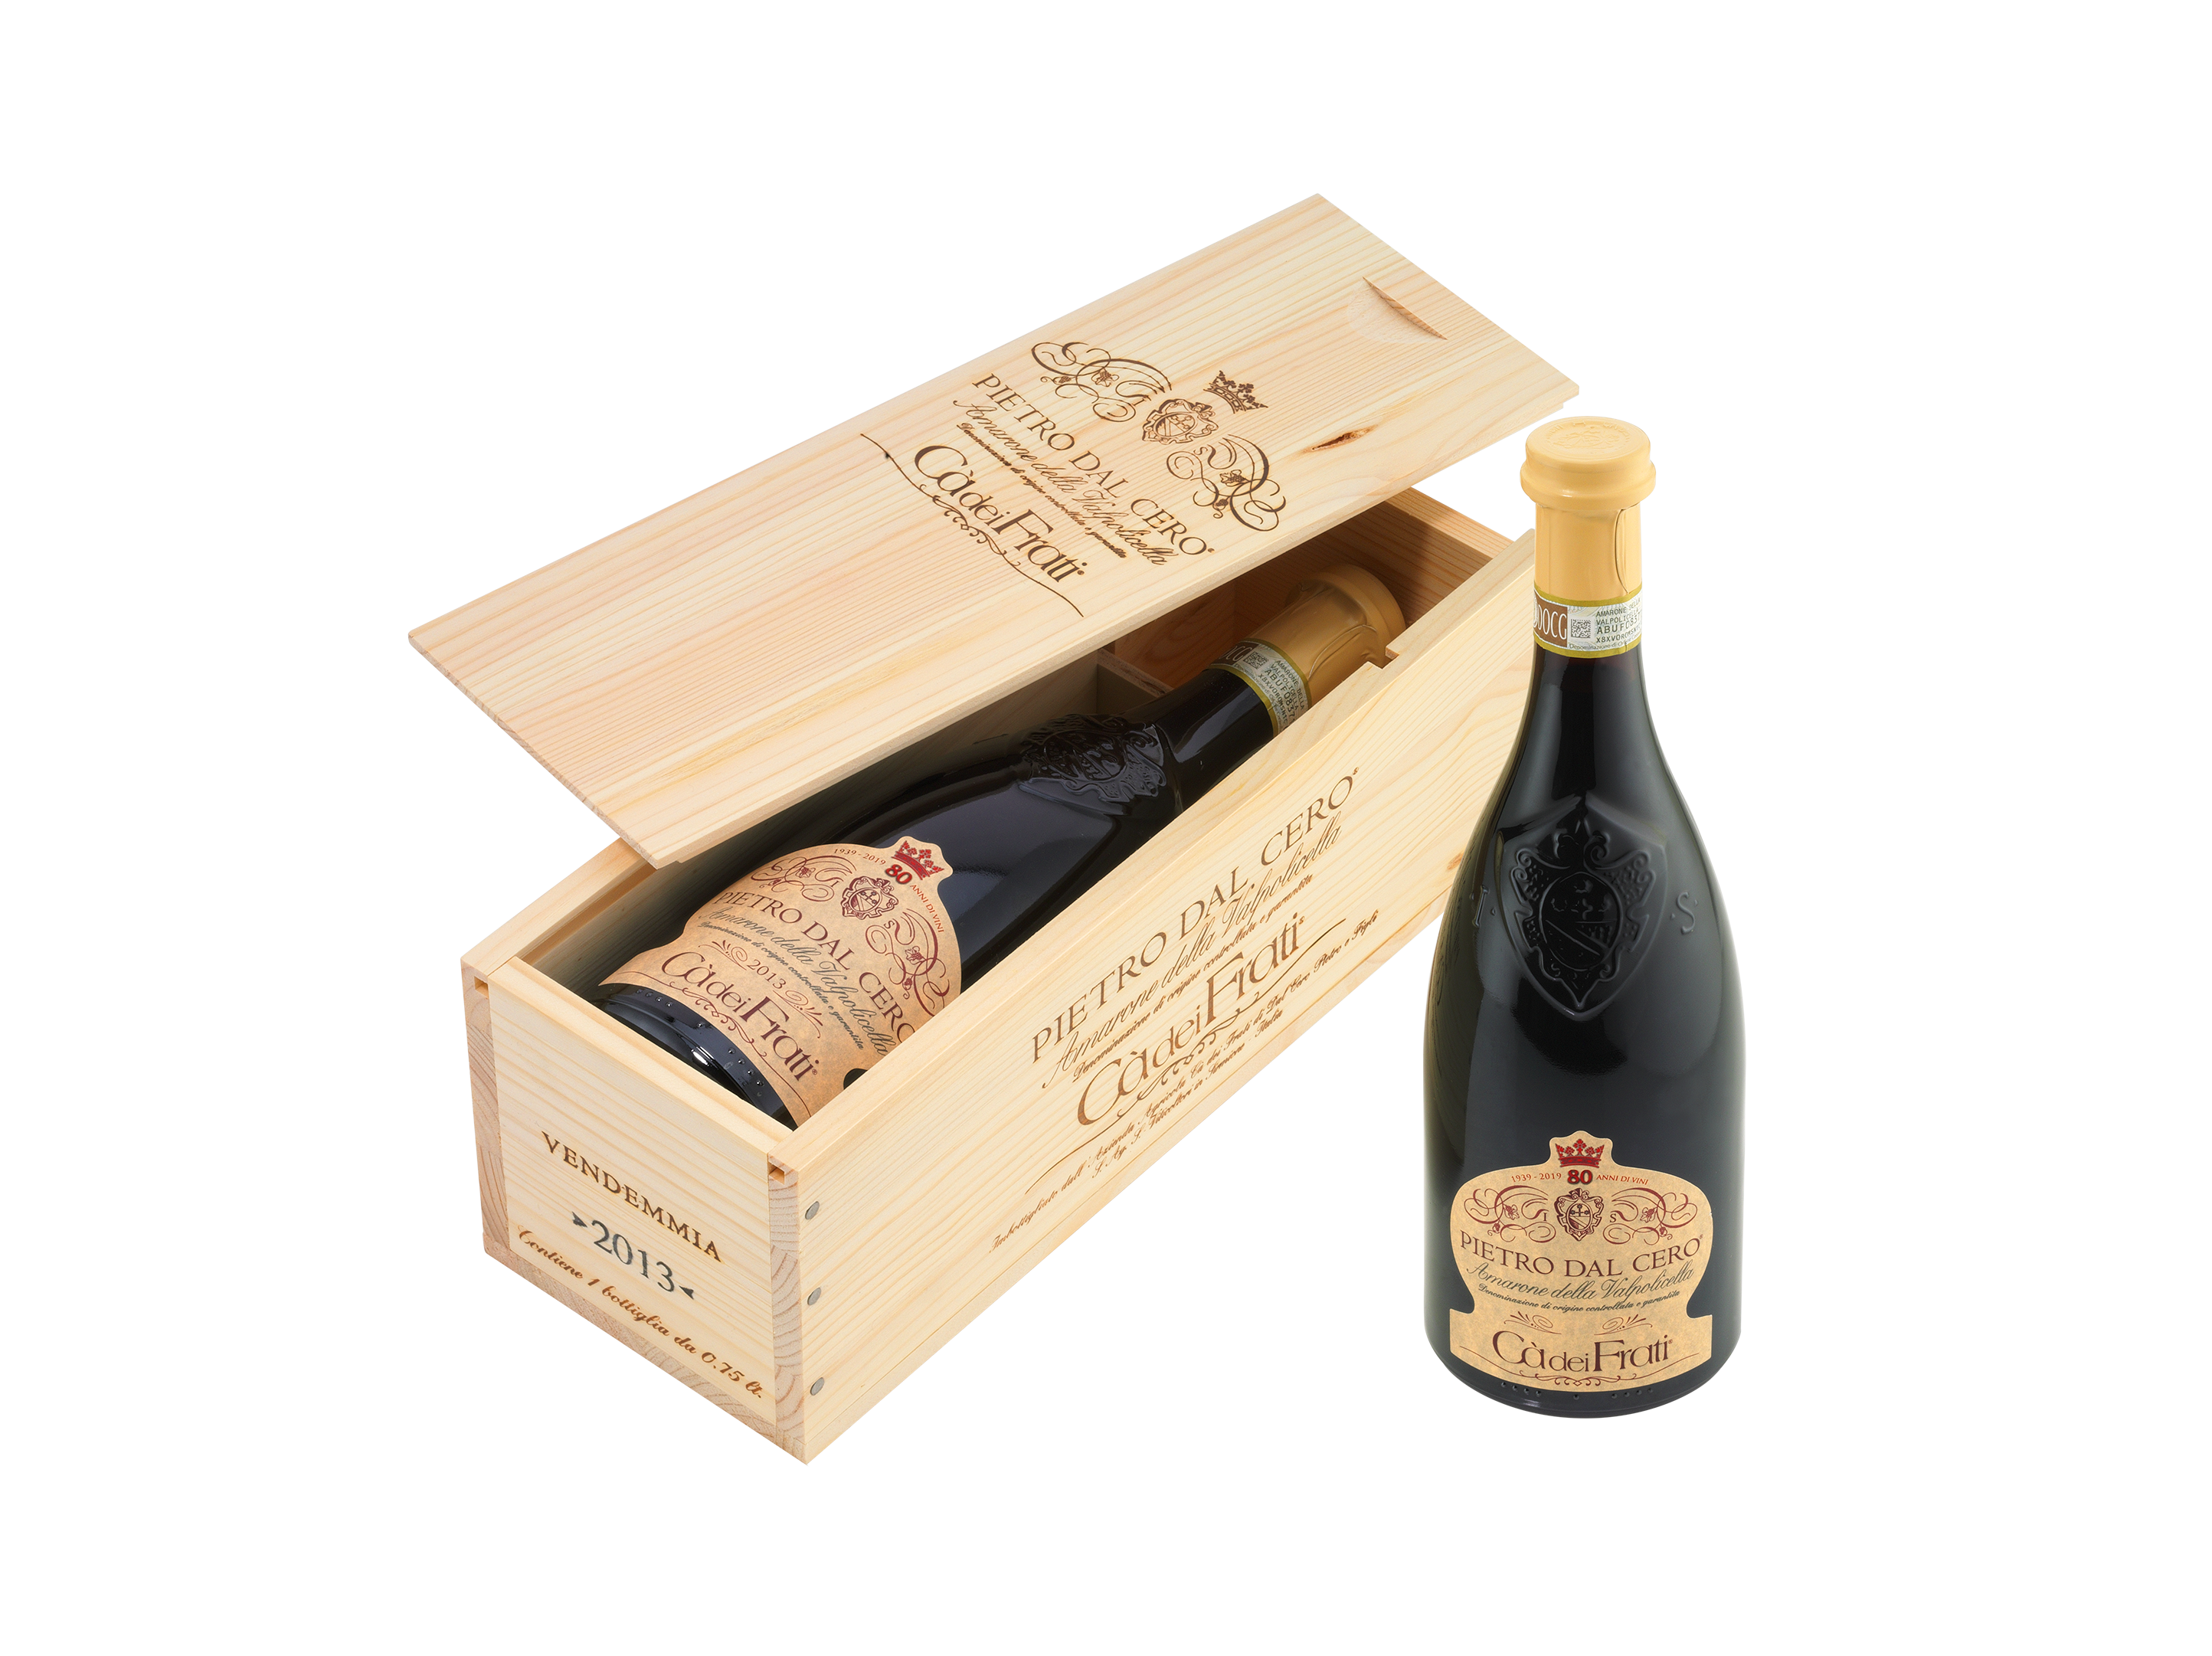 Frati Pietro einfach Wein guter - Amarone Cà dal dei Holzkiste Cero viDeli in |